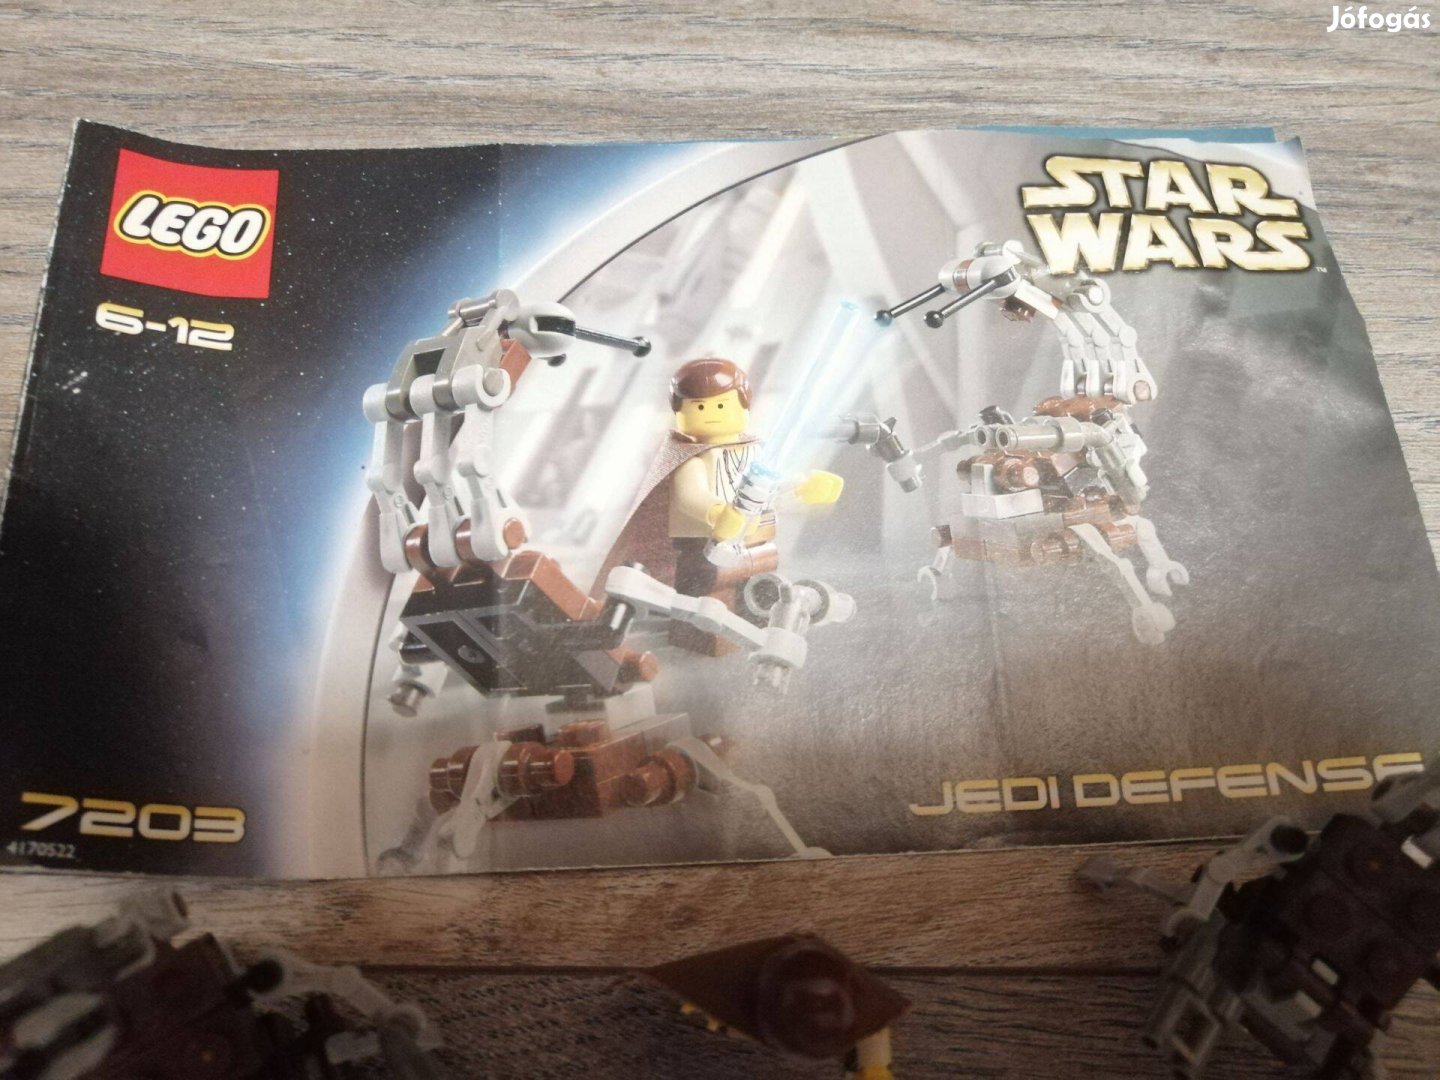 Lego Star Wars 7203 használt készlet